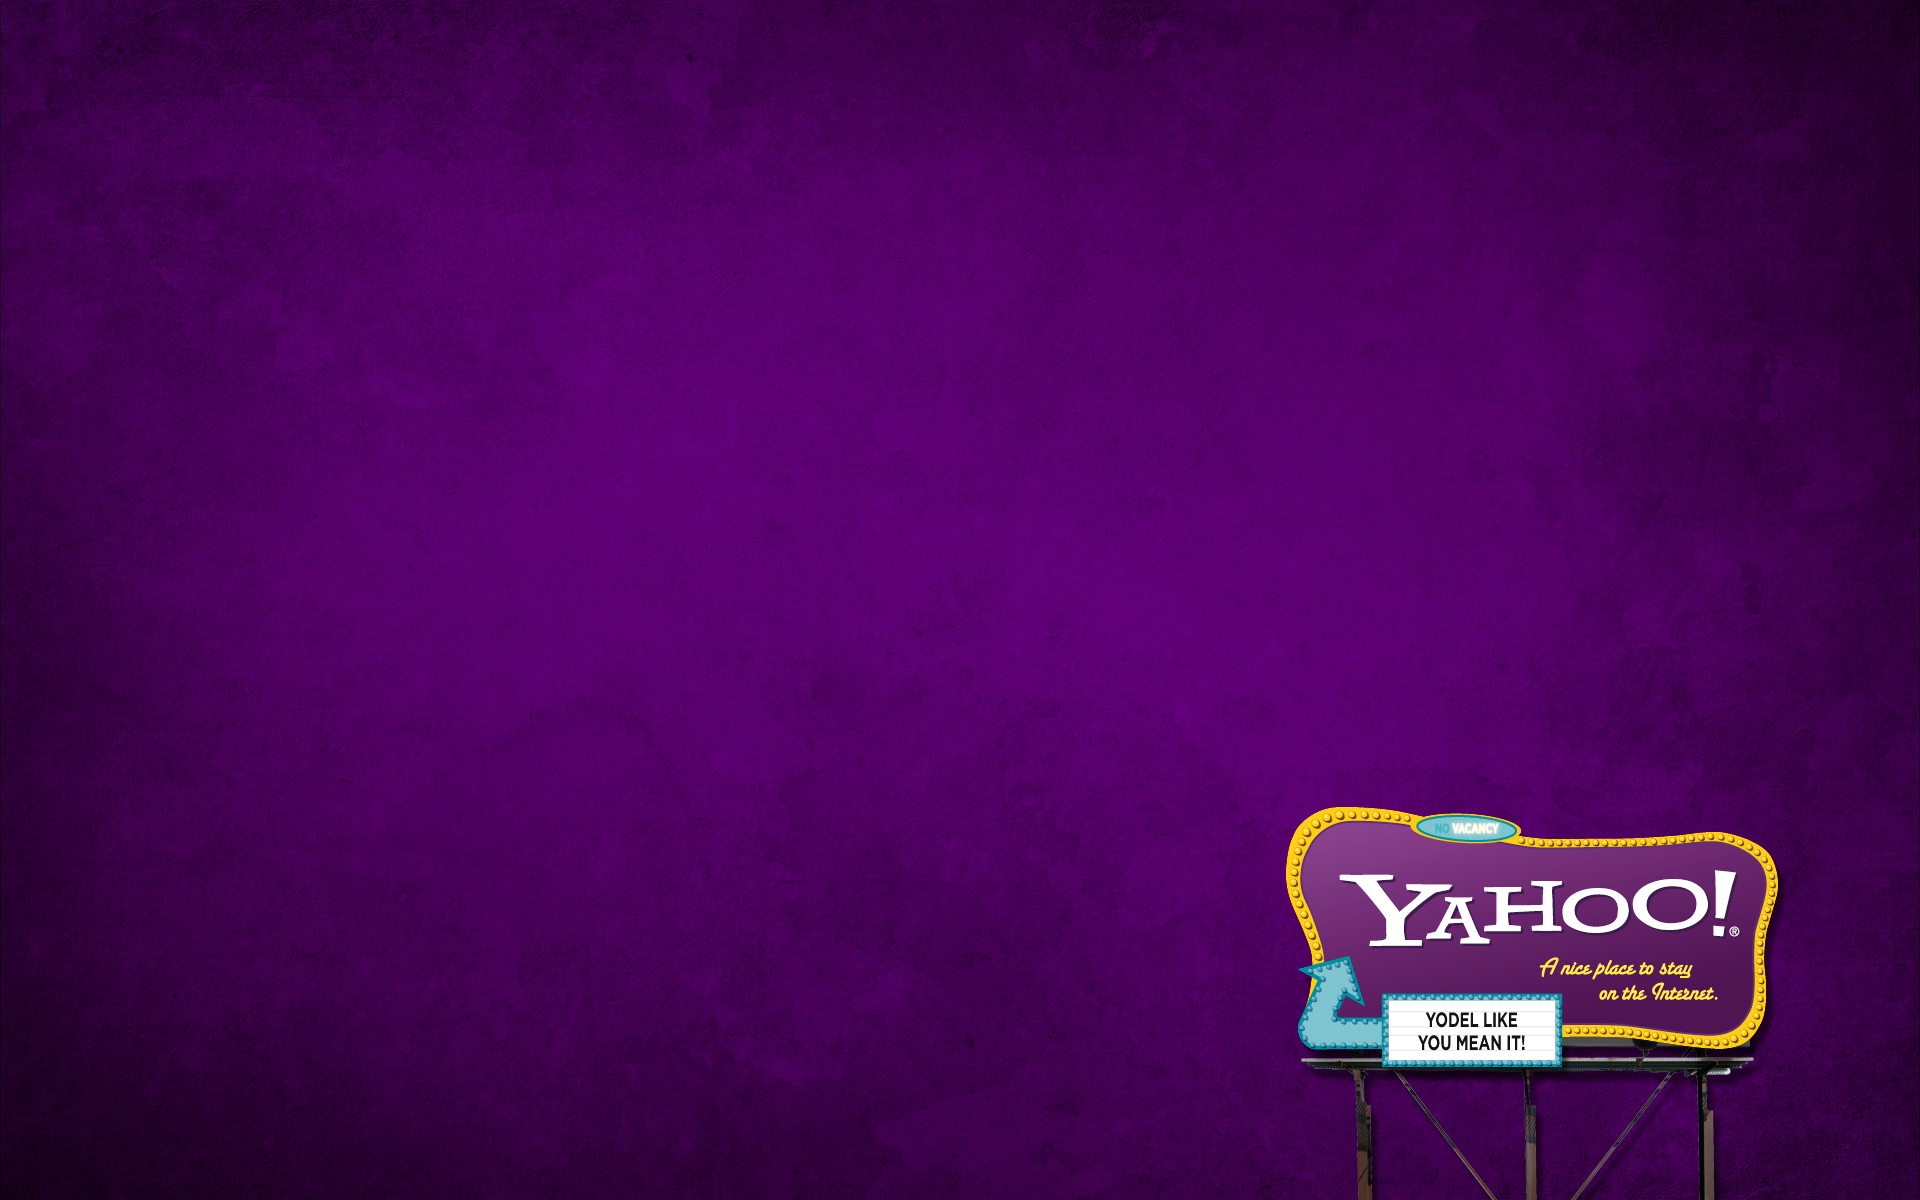 Картинки Yahoo, поисковая система, интернет фото и обои на рабочий стол